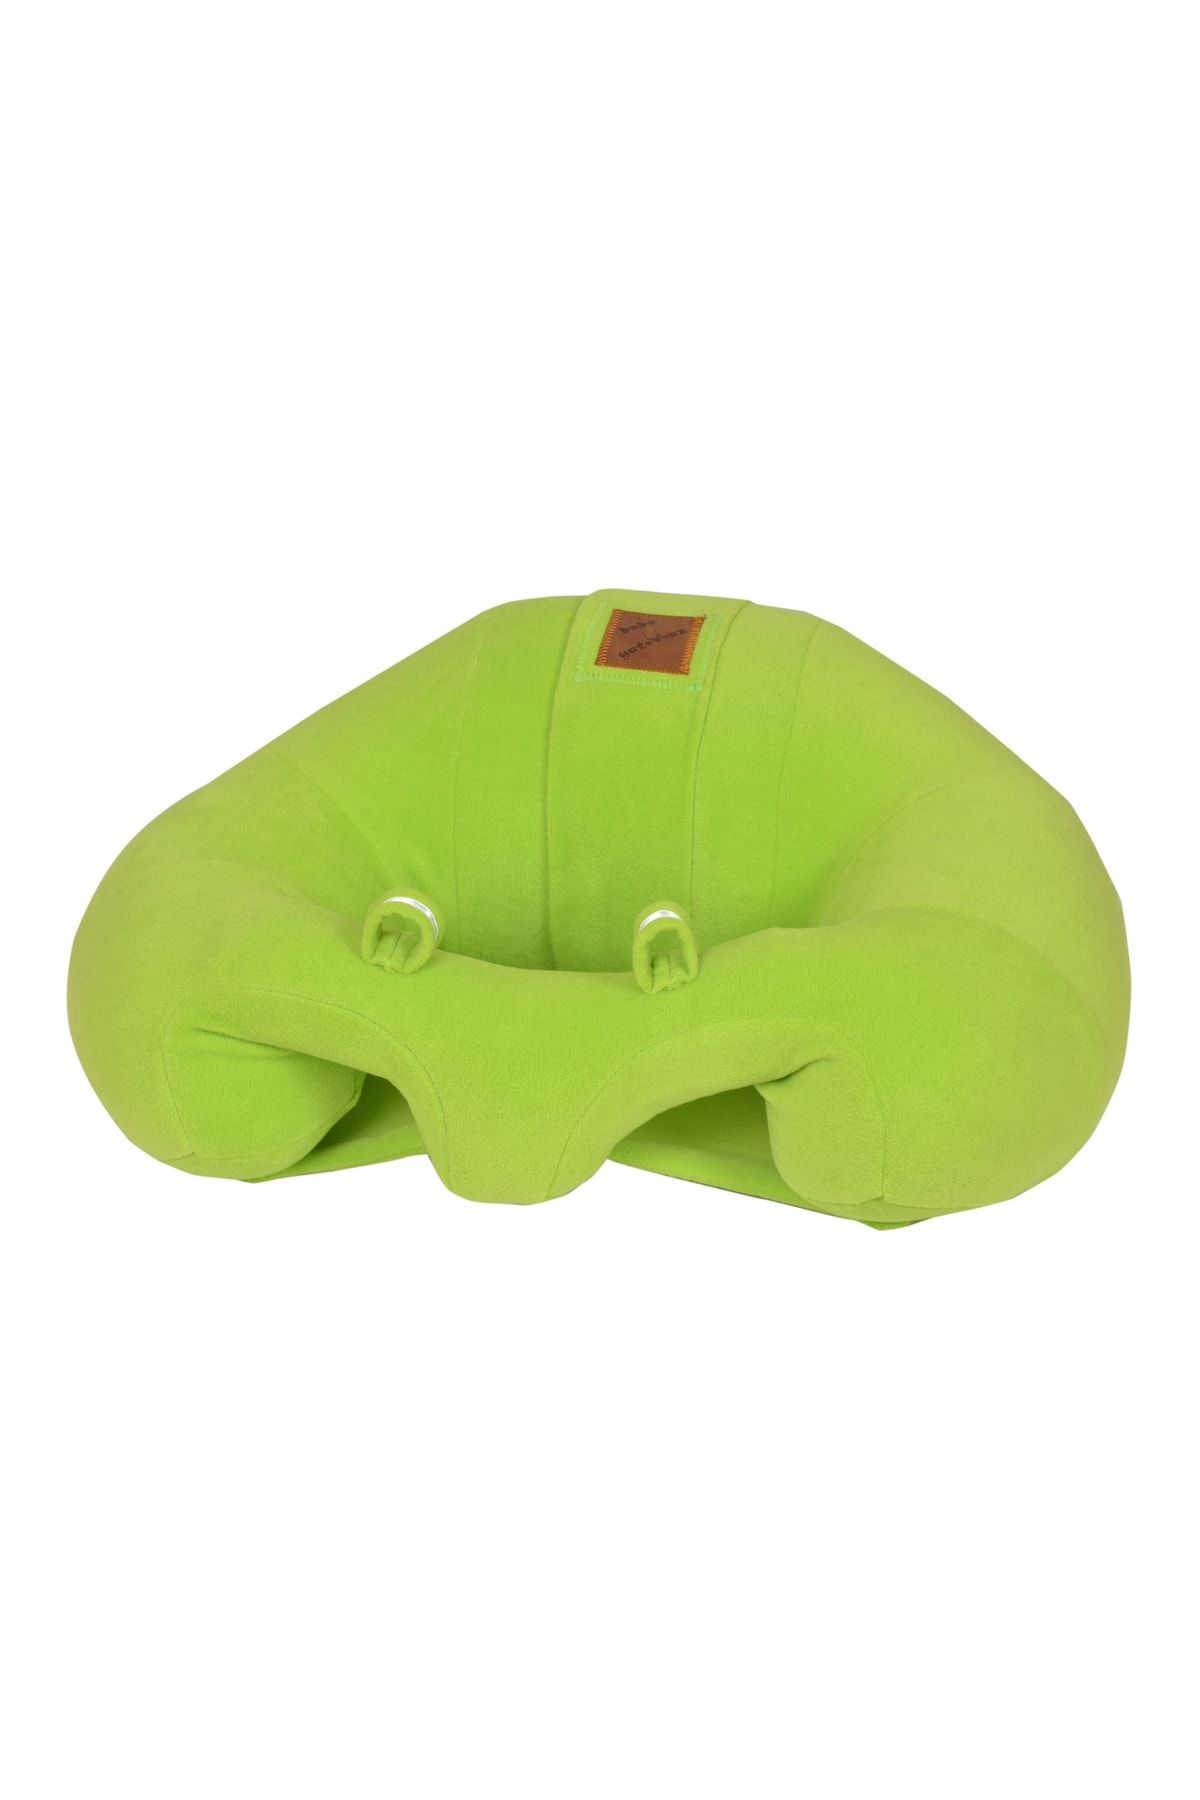 Bebeyatmaz Bebe Yatmaz Bebek Oturma Destek Minderi Koltuğu Yeşil